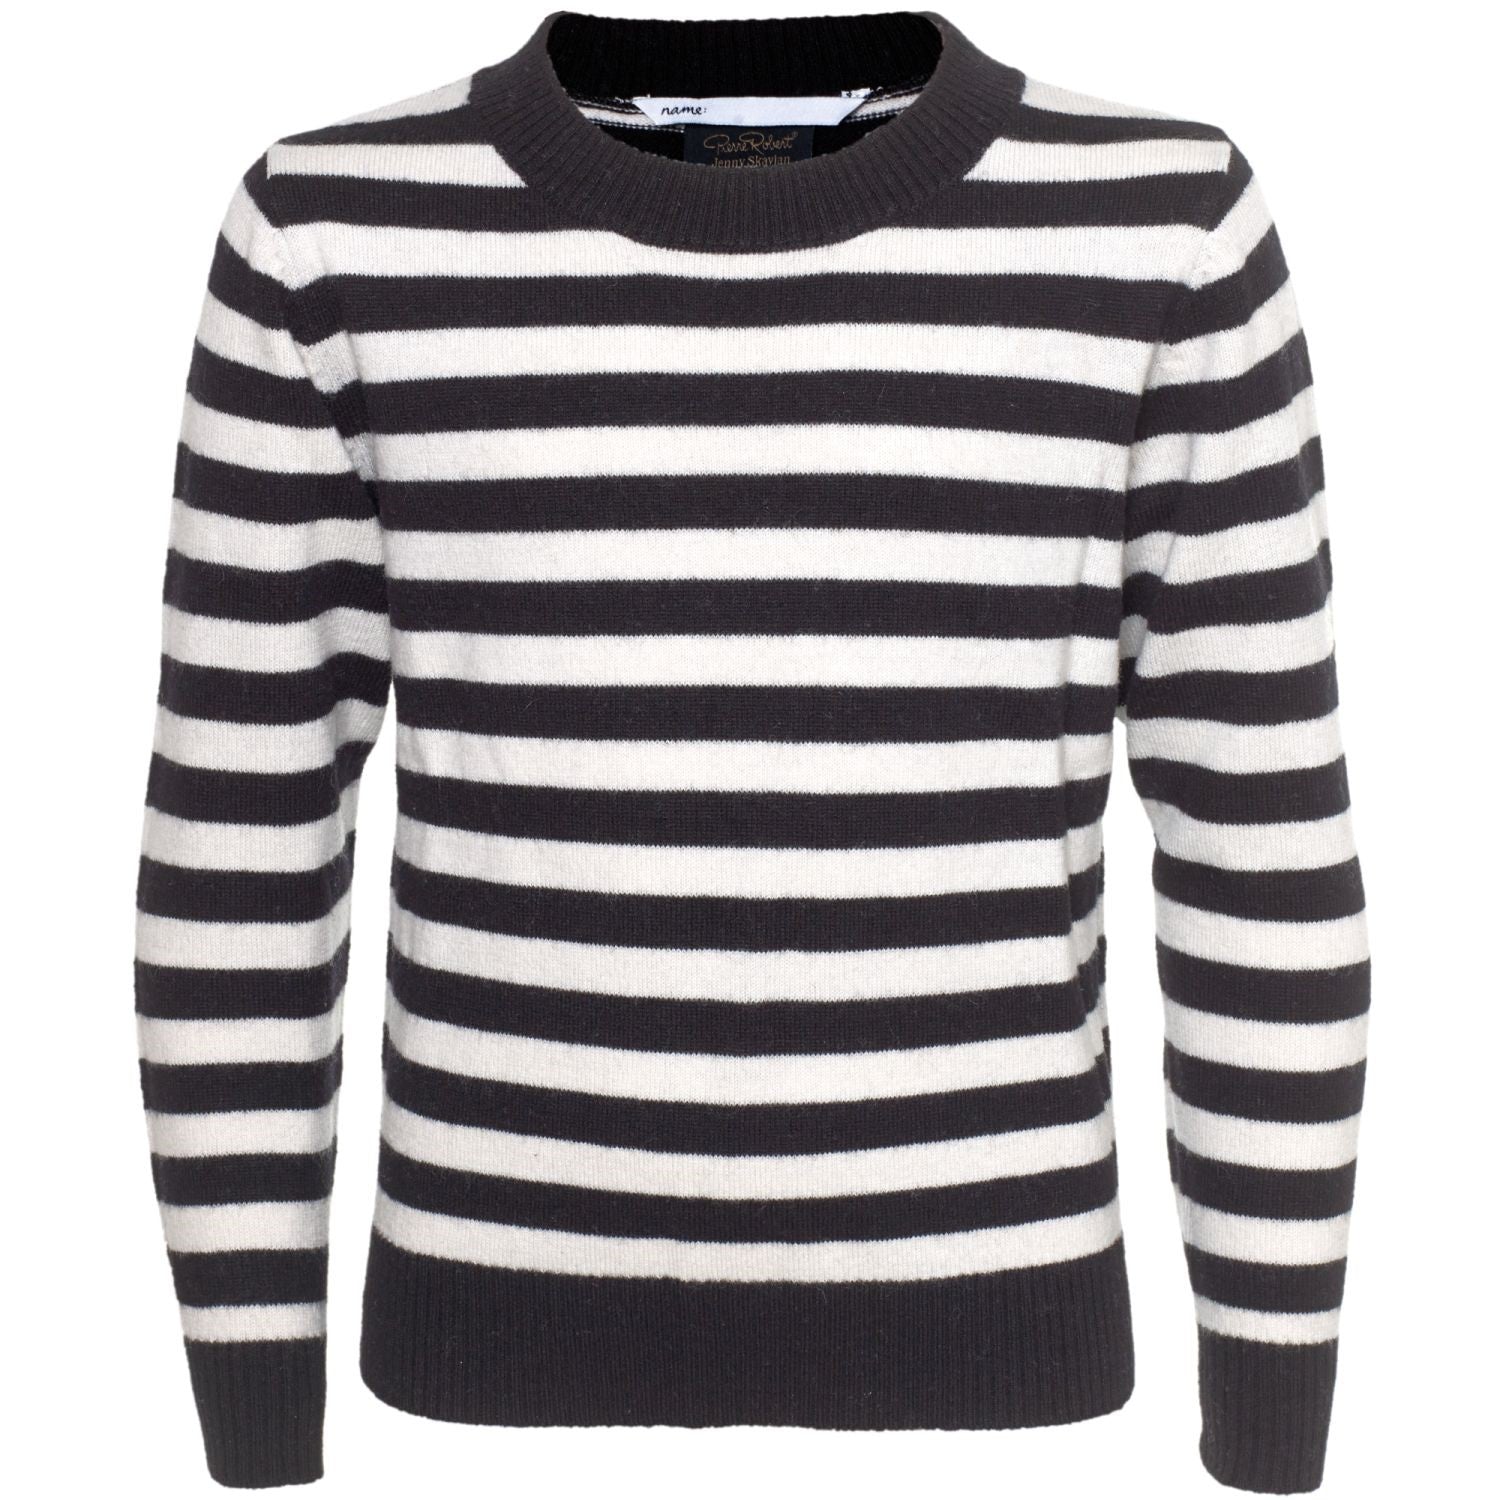 Wool Sweater Kids - Black Stripe - Pierre Robert x Jenny Skavlan - Gensere - VILLOID.no